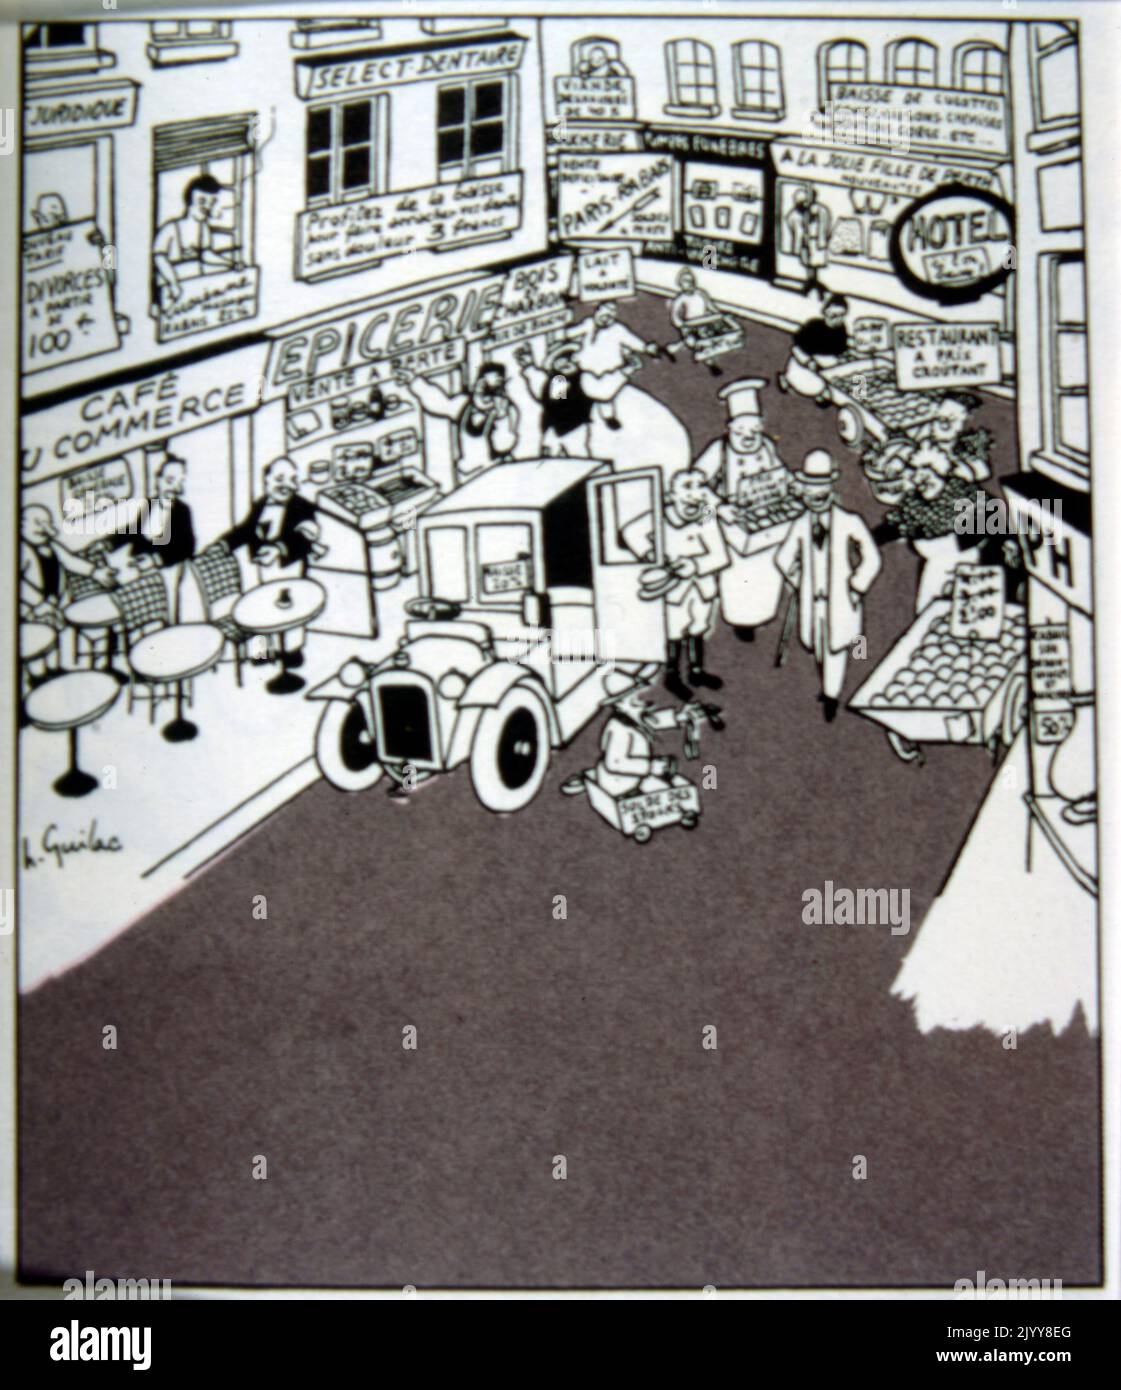 Un cartoon bianco e nero di L. Guilac; una tipica scena in una strada piena di commercio con tutti i tipi di negozi, come alimentari, dentista, caffè. Foto Stock